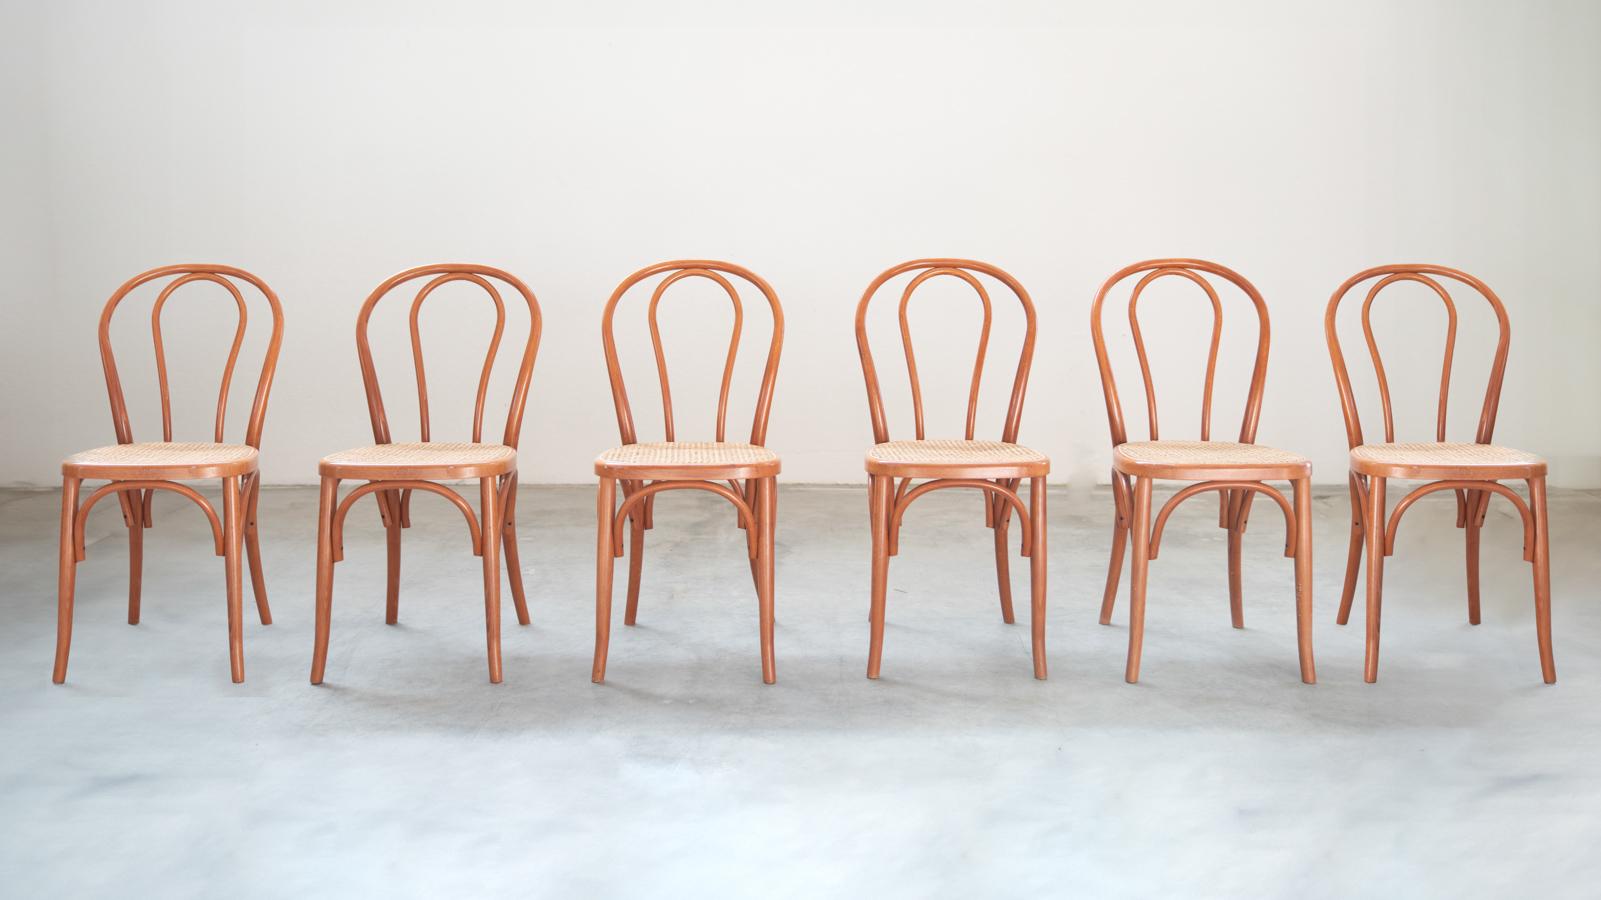 Sedie stile Thonet, in legno di faggio curvato e seduta in paglia, nr 34 totale, 1990-2000
DESCRIZIONE       Sono disponibili in totale nr 34 sedie. E' possibile avere dei gruppi da nr              4 , 6, 8 , 10 sedie. Euro cadauna